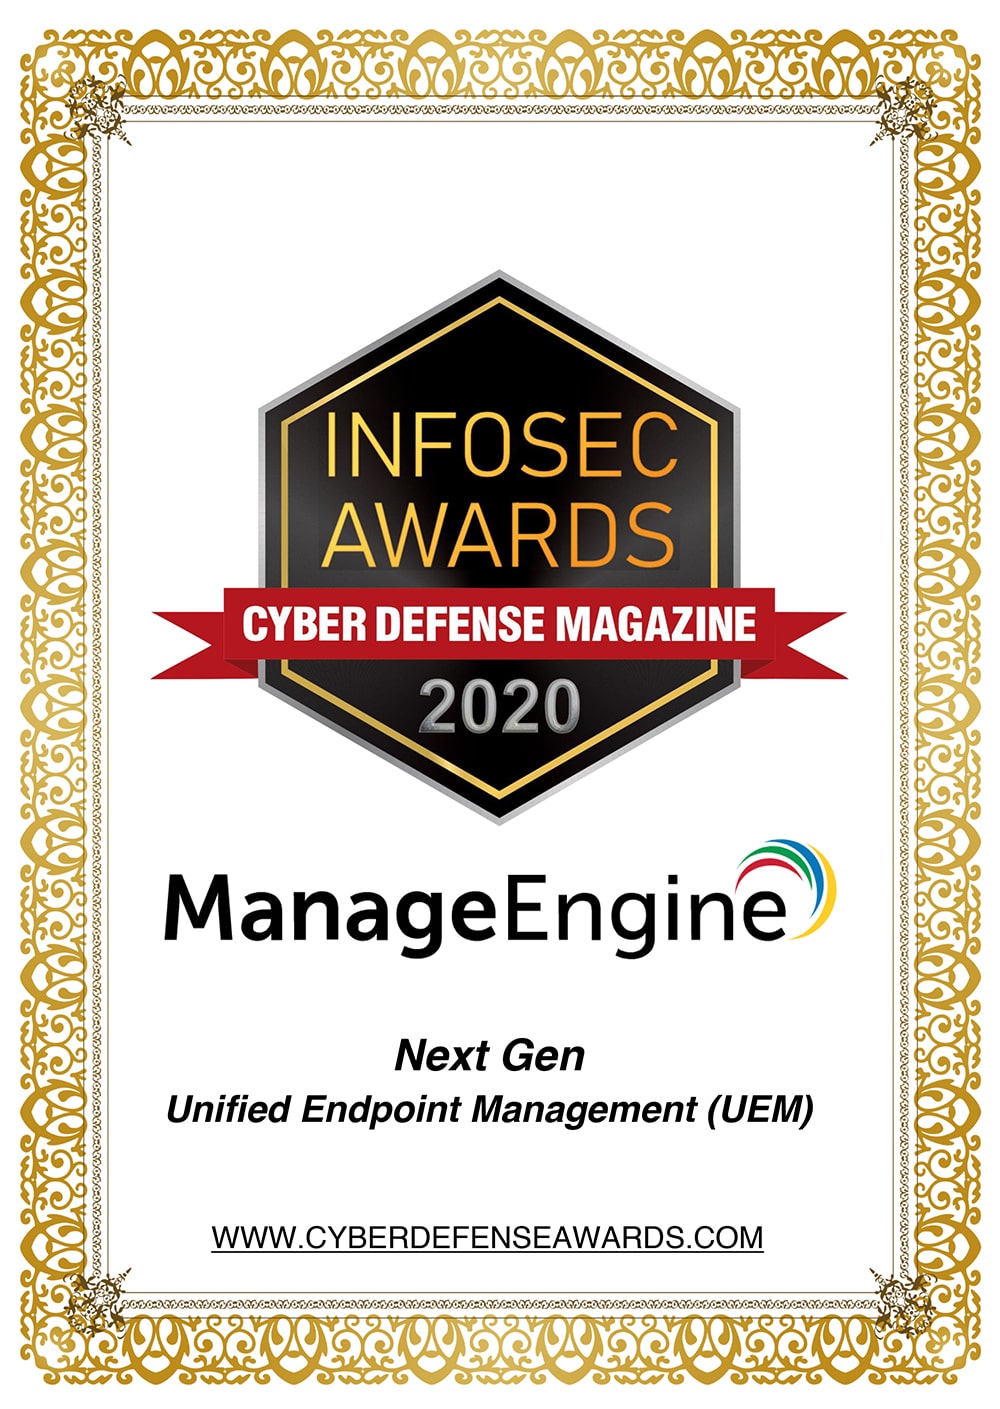 Infosec Awards 2020